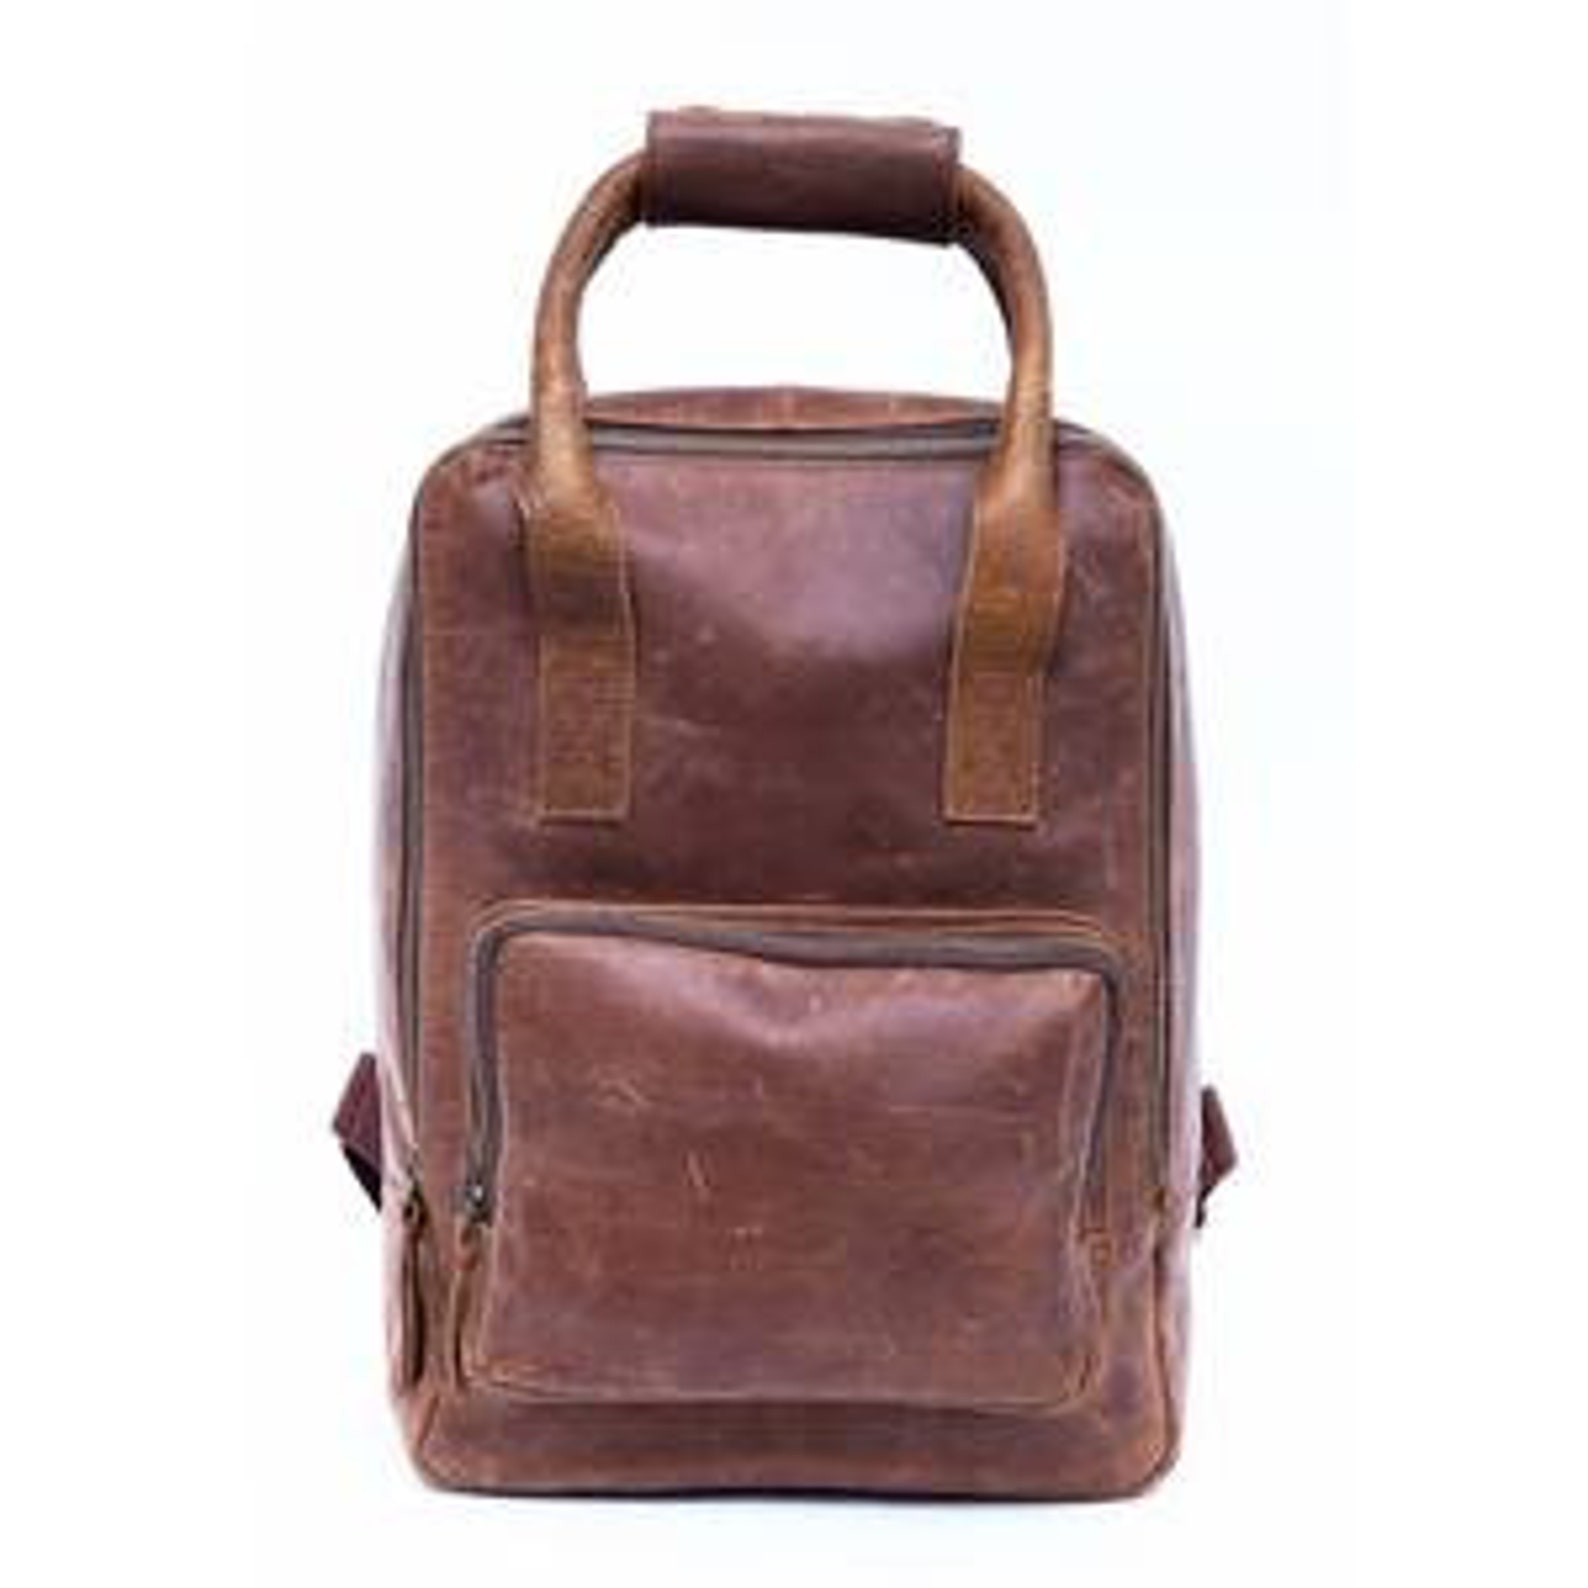 Genuine Leather Shoulder Satchel backpack College Bag men | Etsy